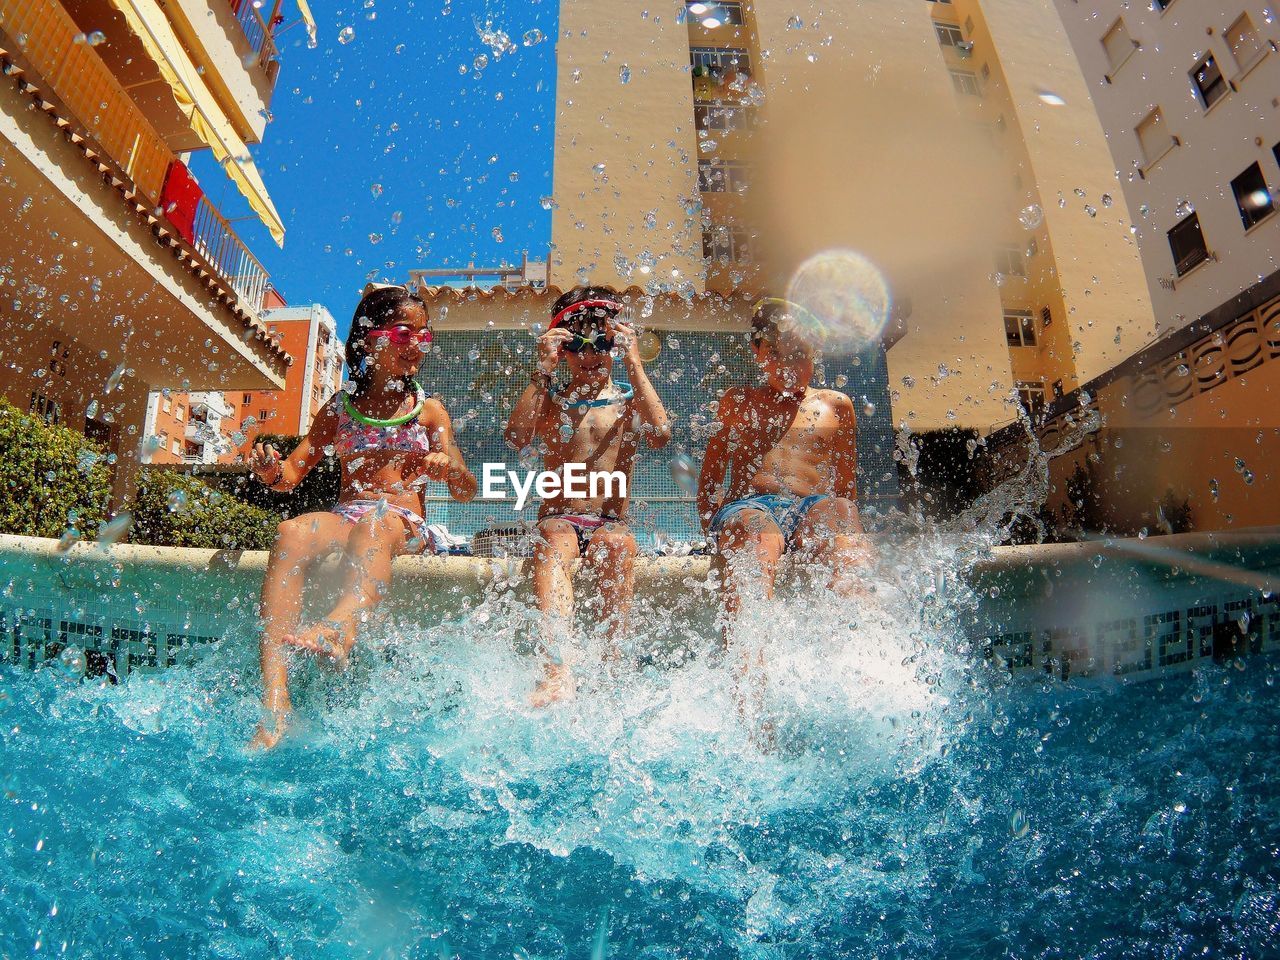 Children splashing in a swimming pool